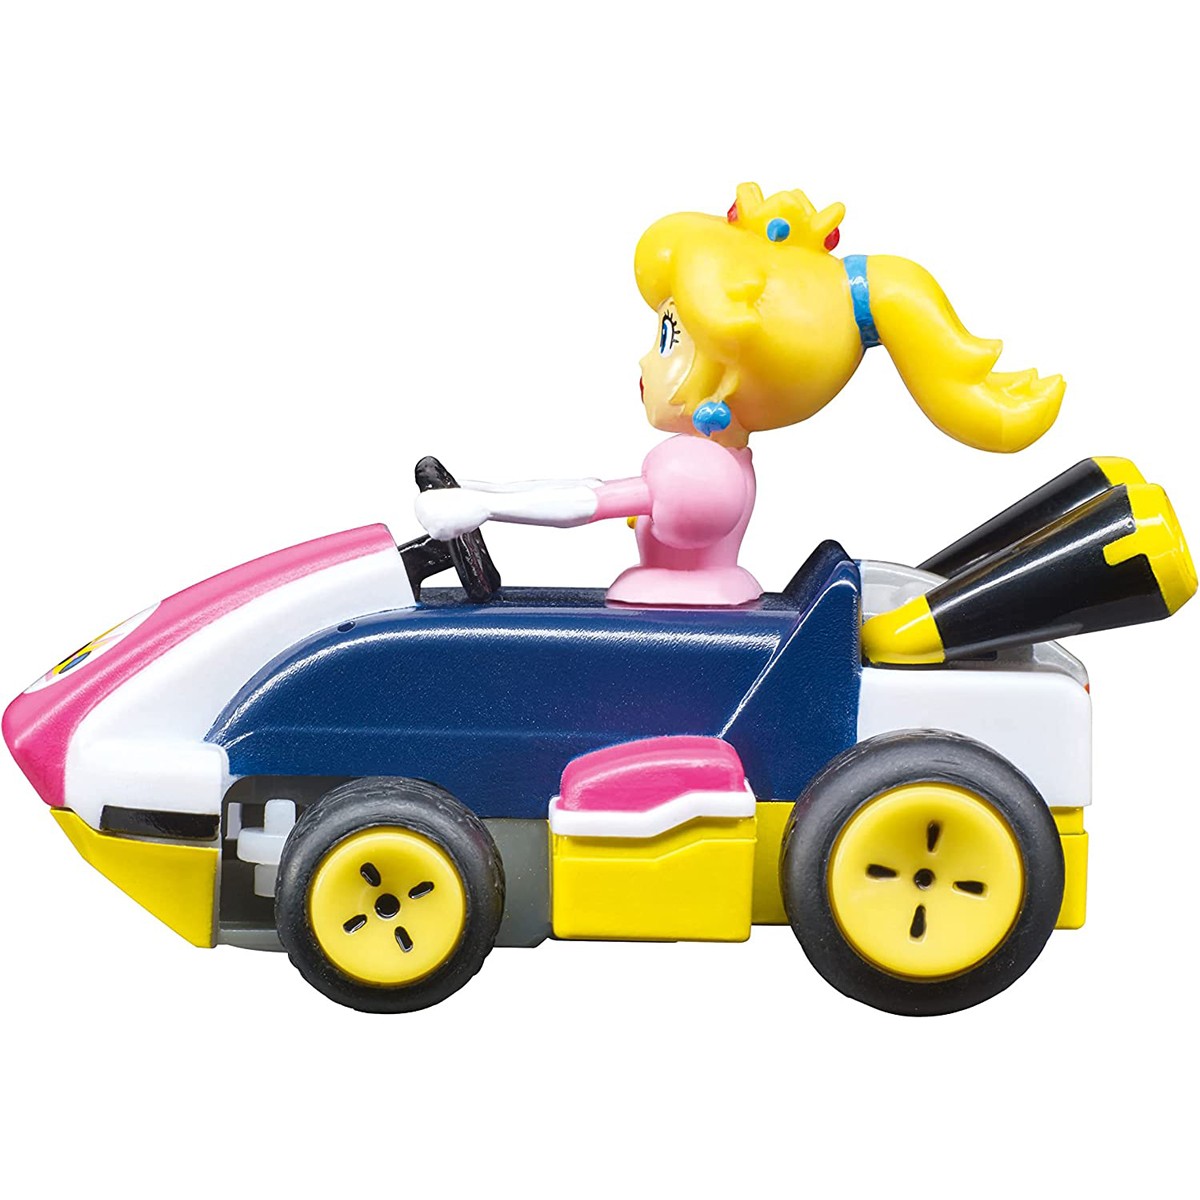 Acheter 2,4GHz Mario Kart™ Mini RC, Peach - Remote Controlled Vehic...